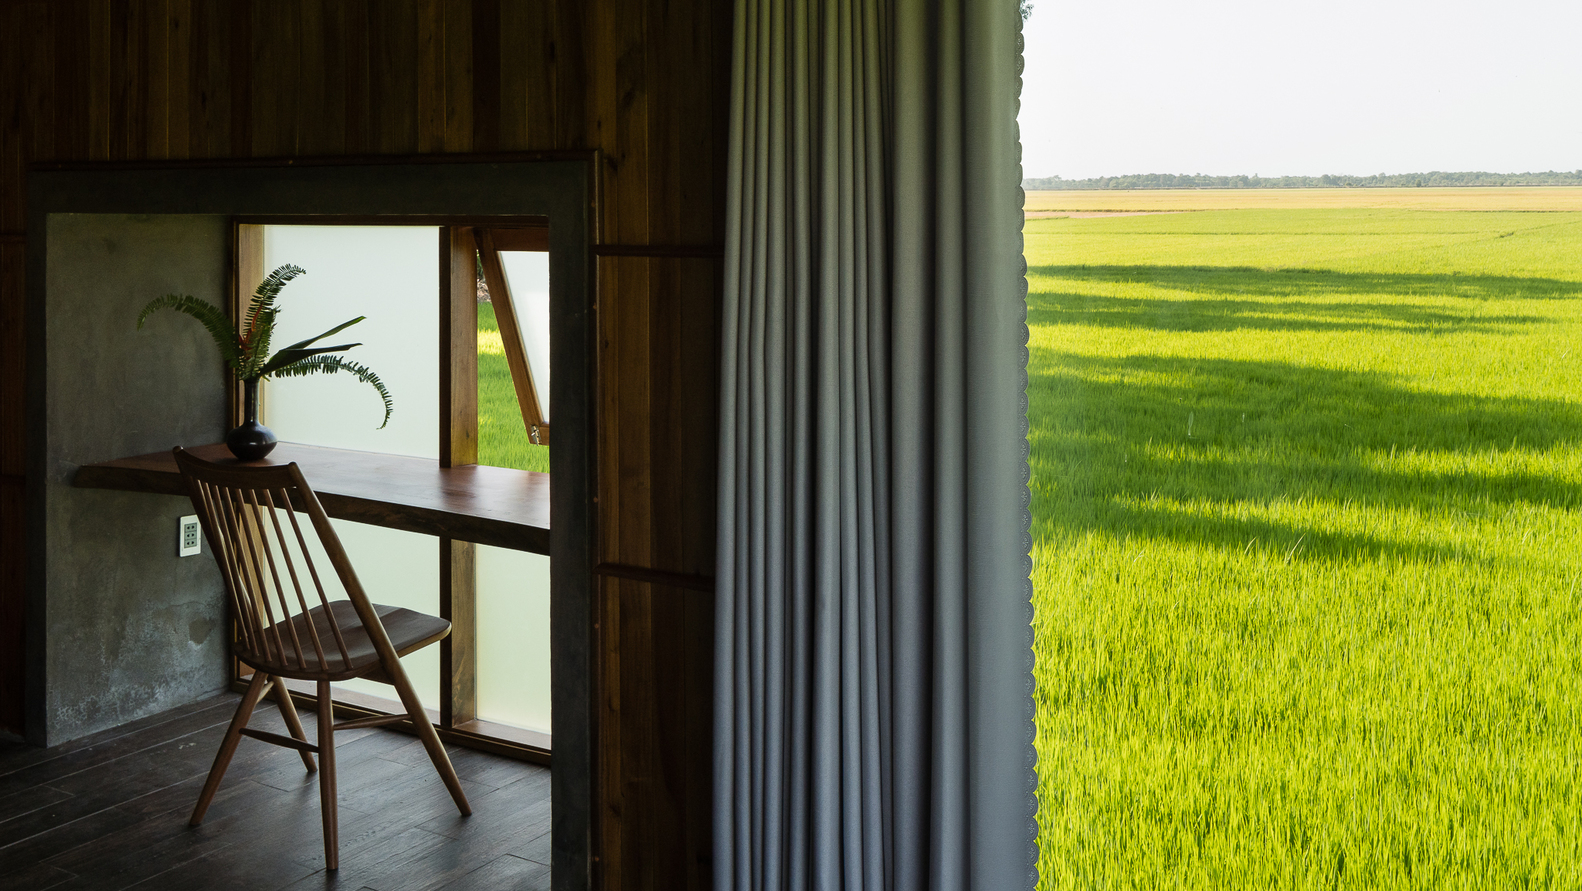 Cận cảnh góc ngồi thư giãn cạnh khung cửa sổ kính hướng nhìn ra đồng lúa xanh mướt